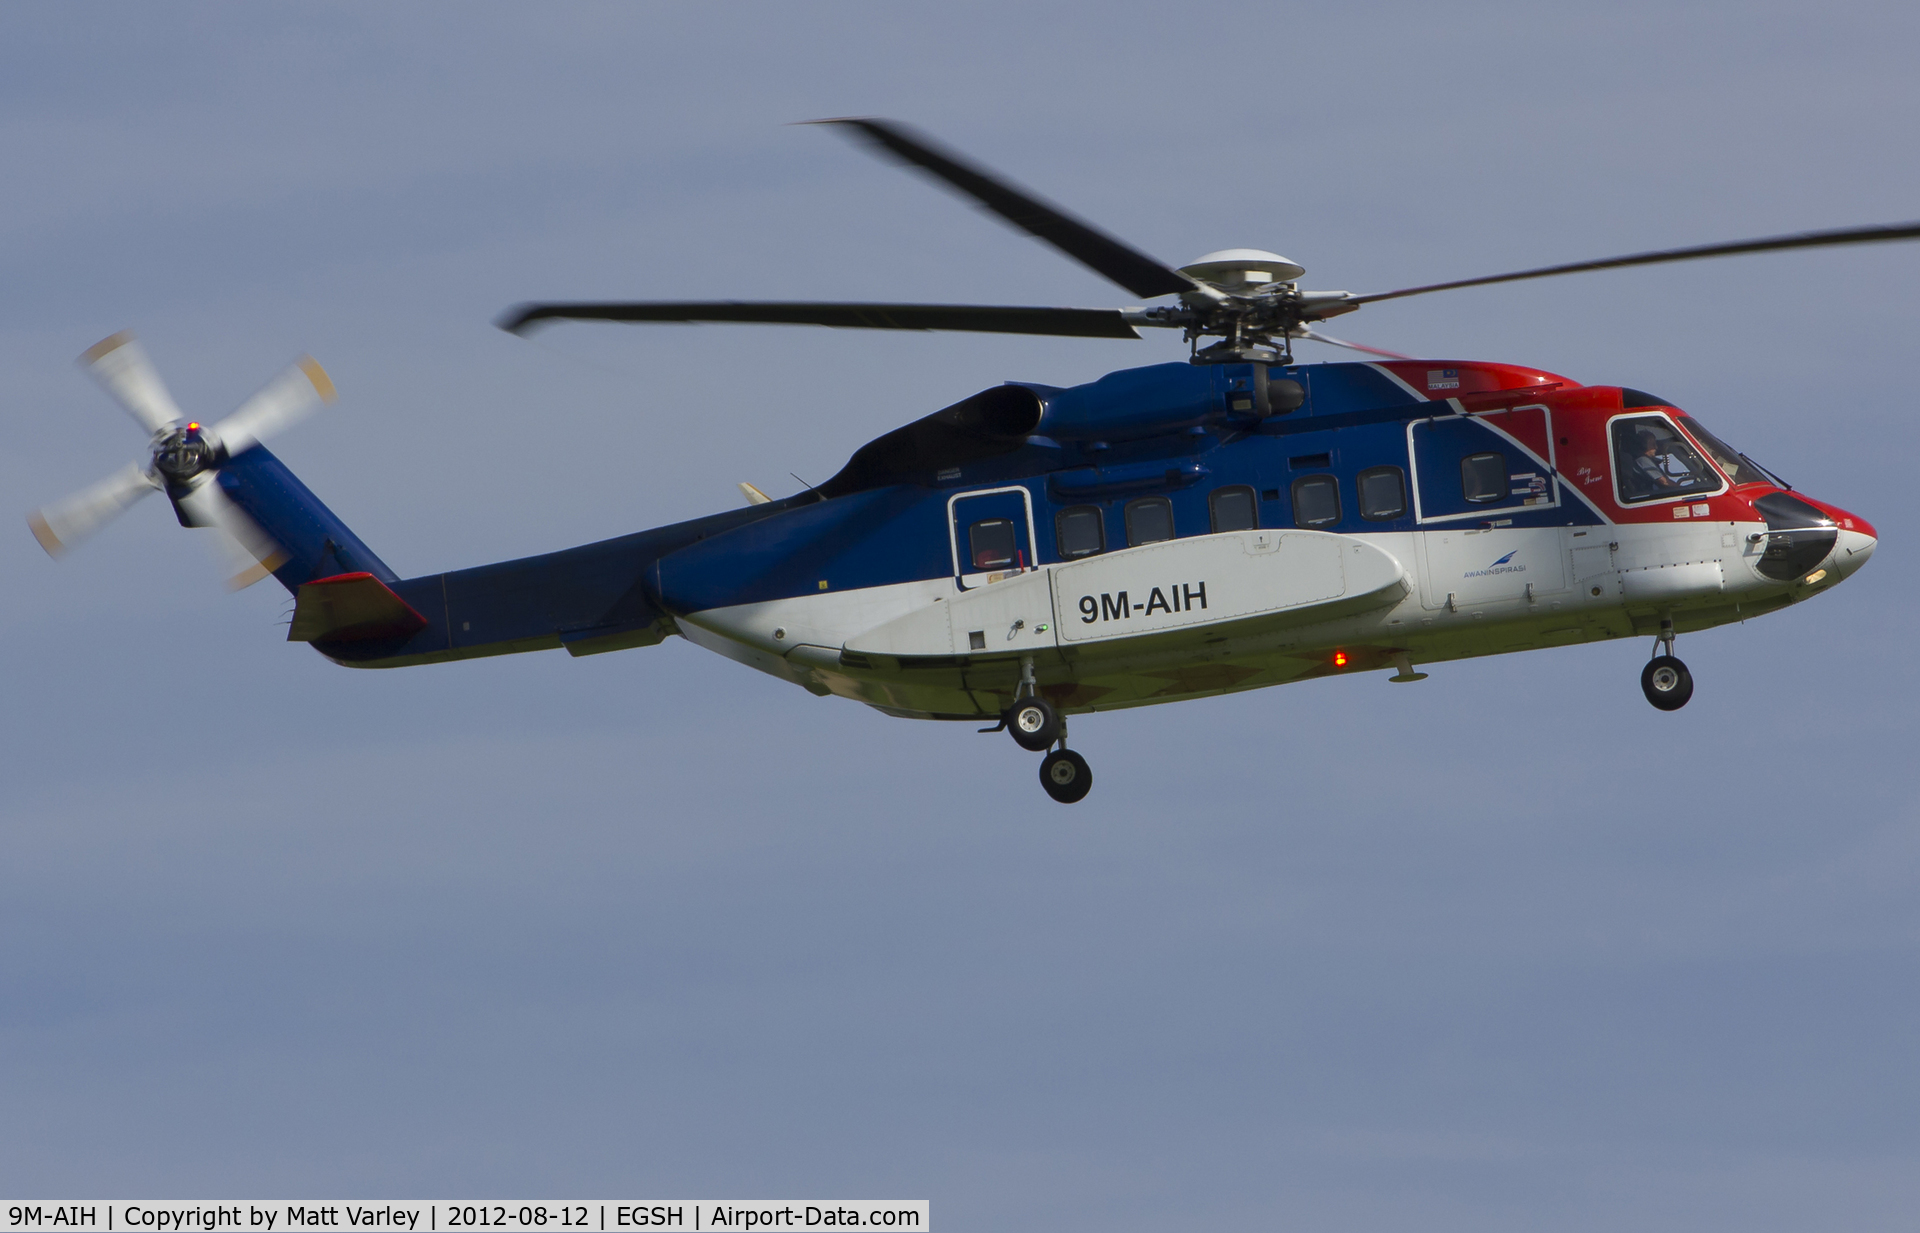 9M-AIH, 2005 Sikorsky S-92A C/N 920024, Arriving at EGSH from Den helder.